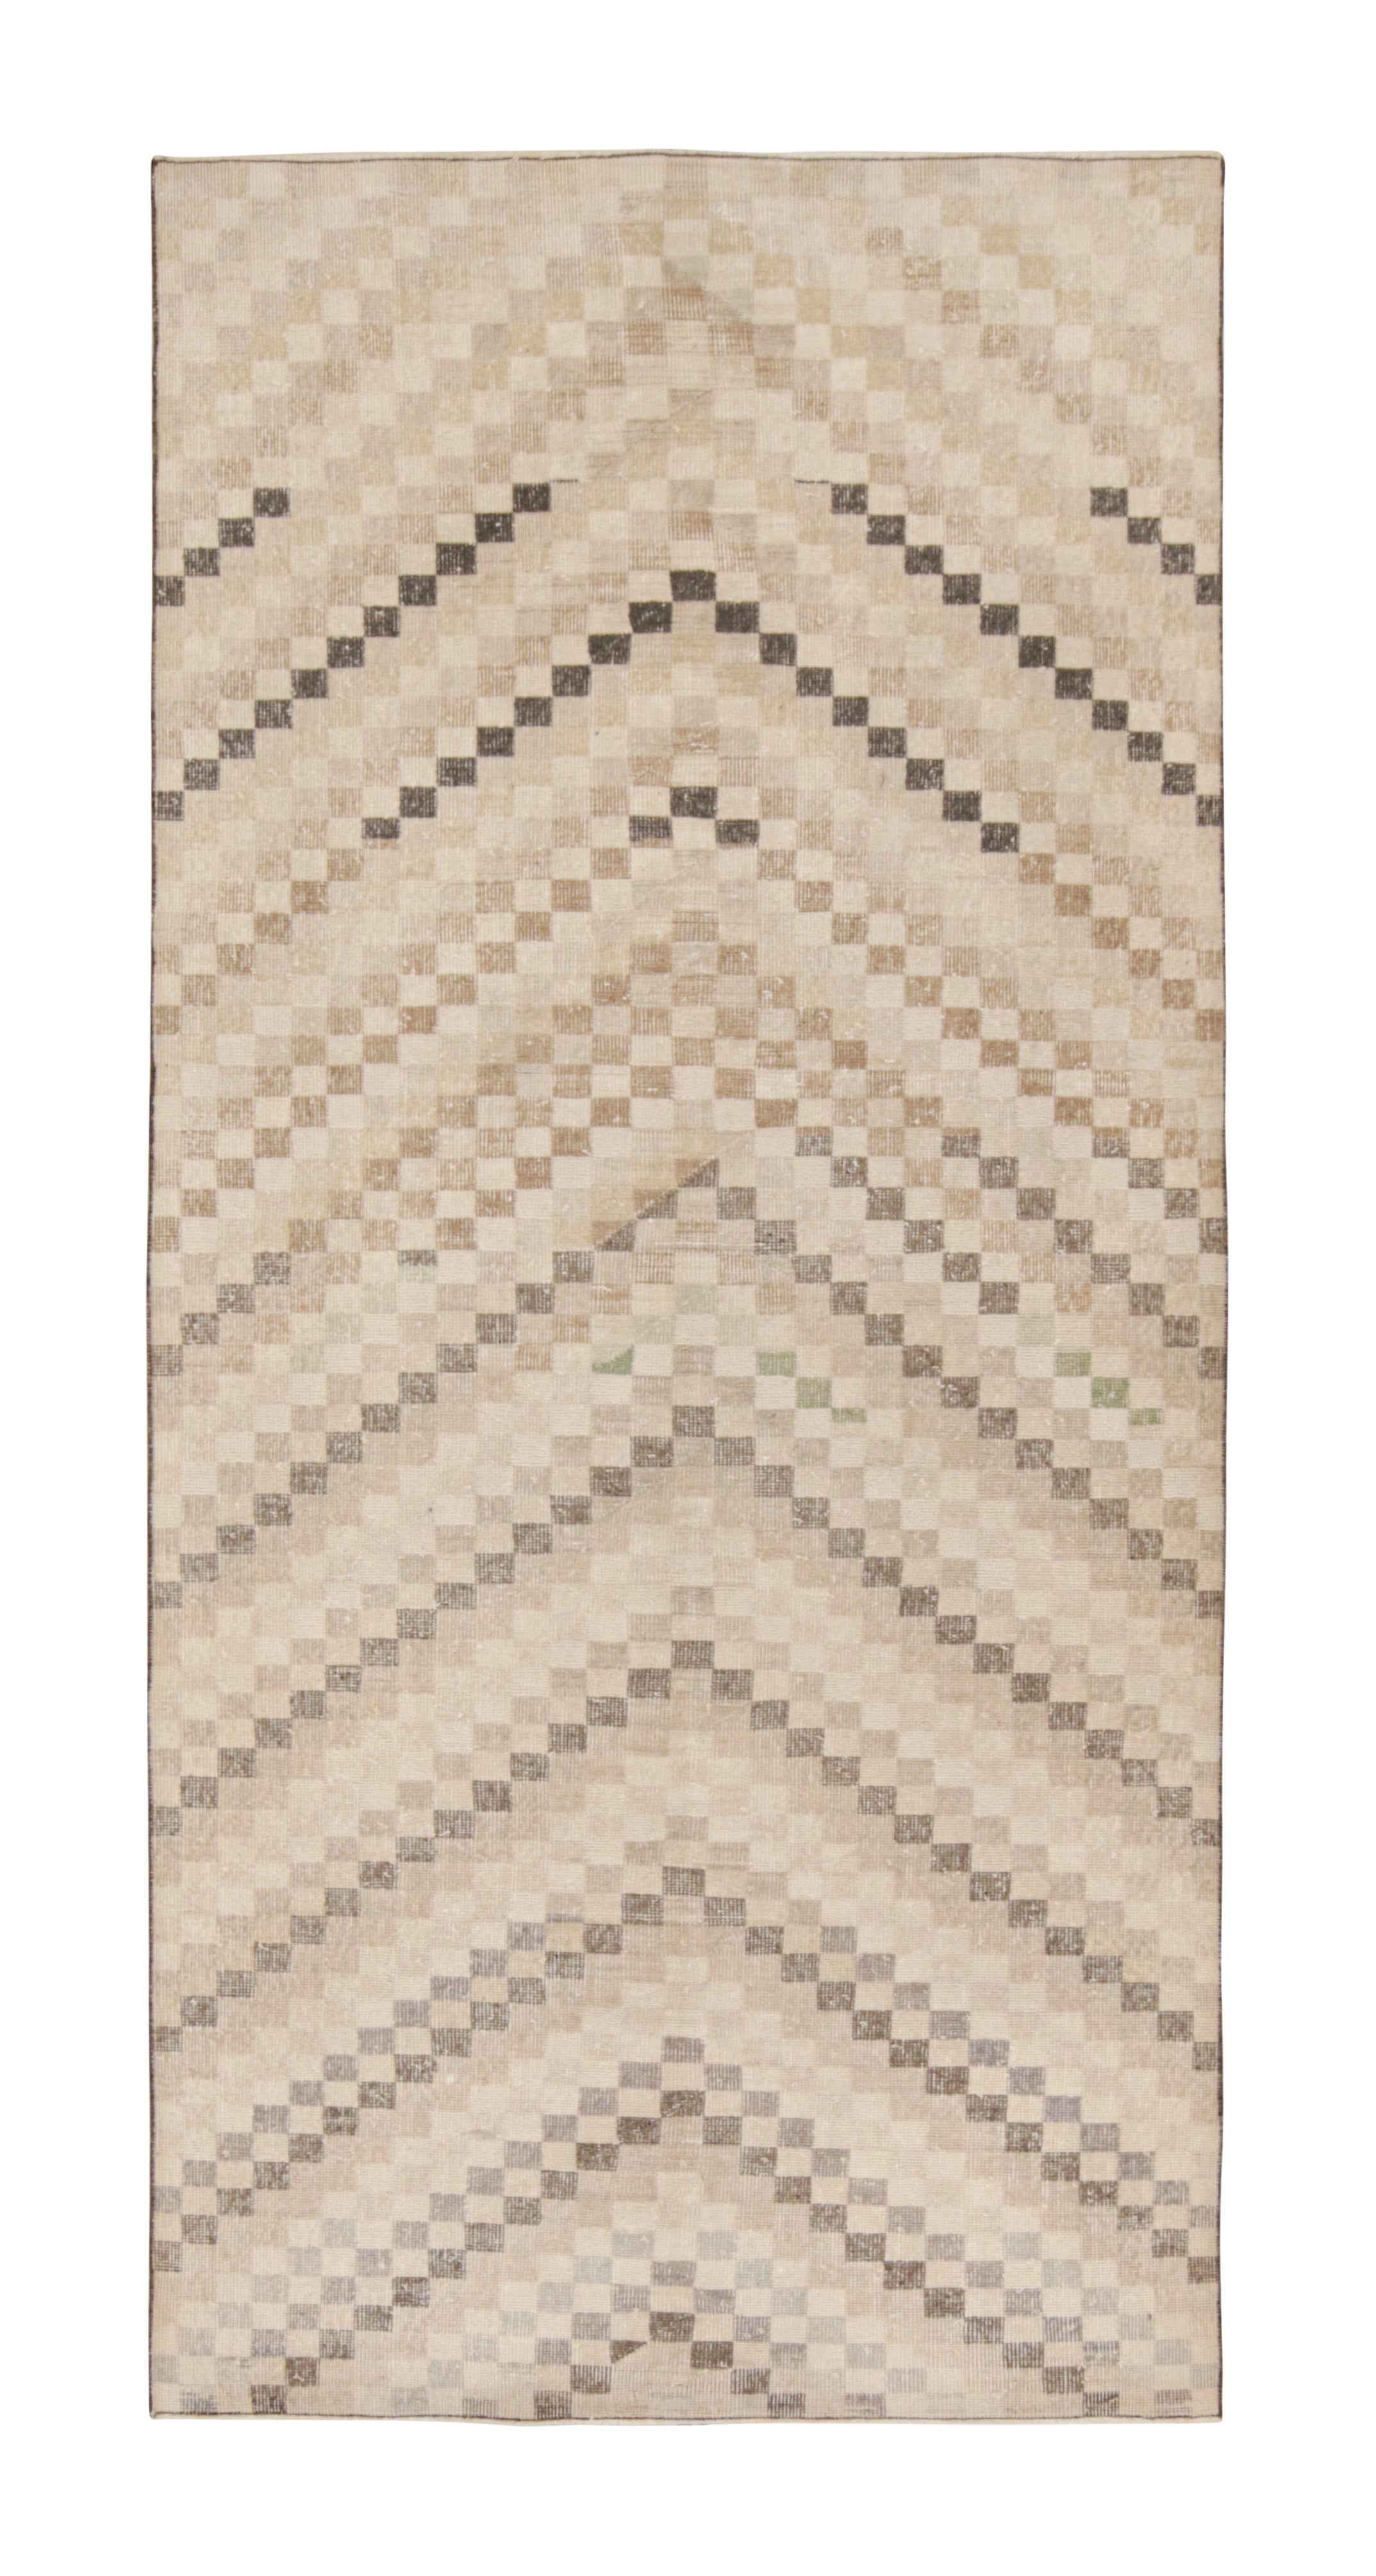 Vintage Zeki Müren Rug in Beige-Brown Geometric Patterns by Rug & Kilim